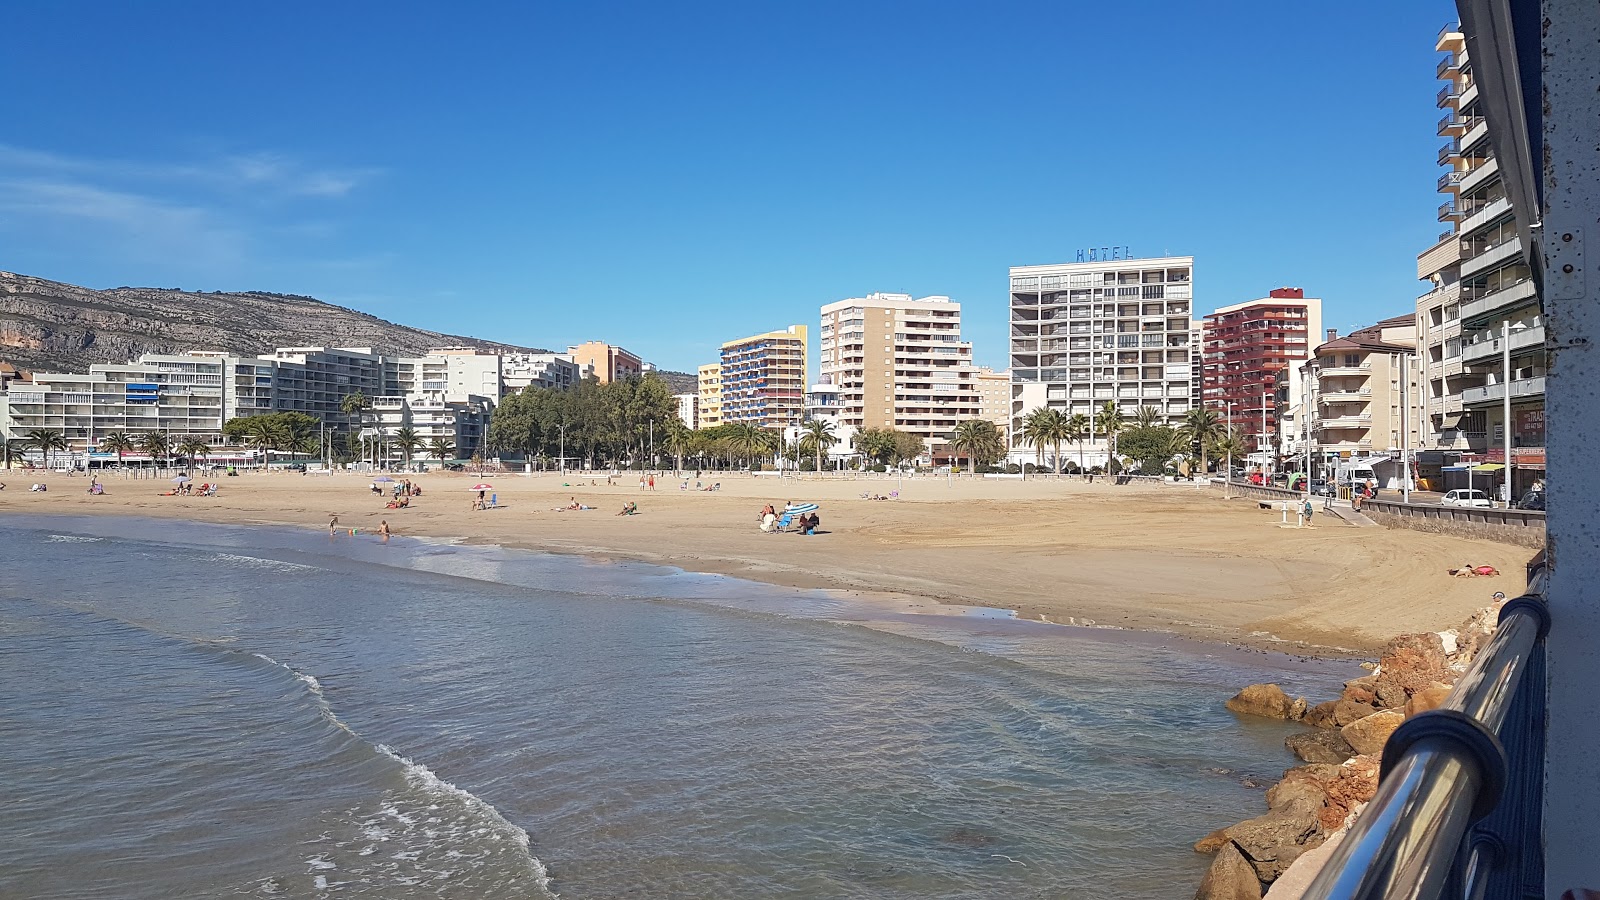 Playa de la Concha'in fotoğrafı kahverengi kum yüzey ile